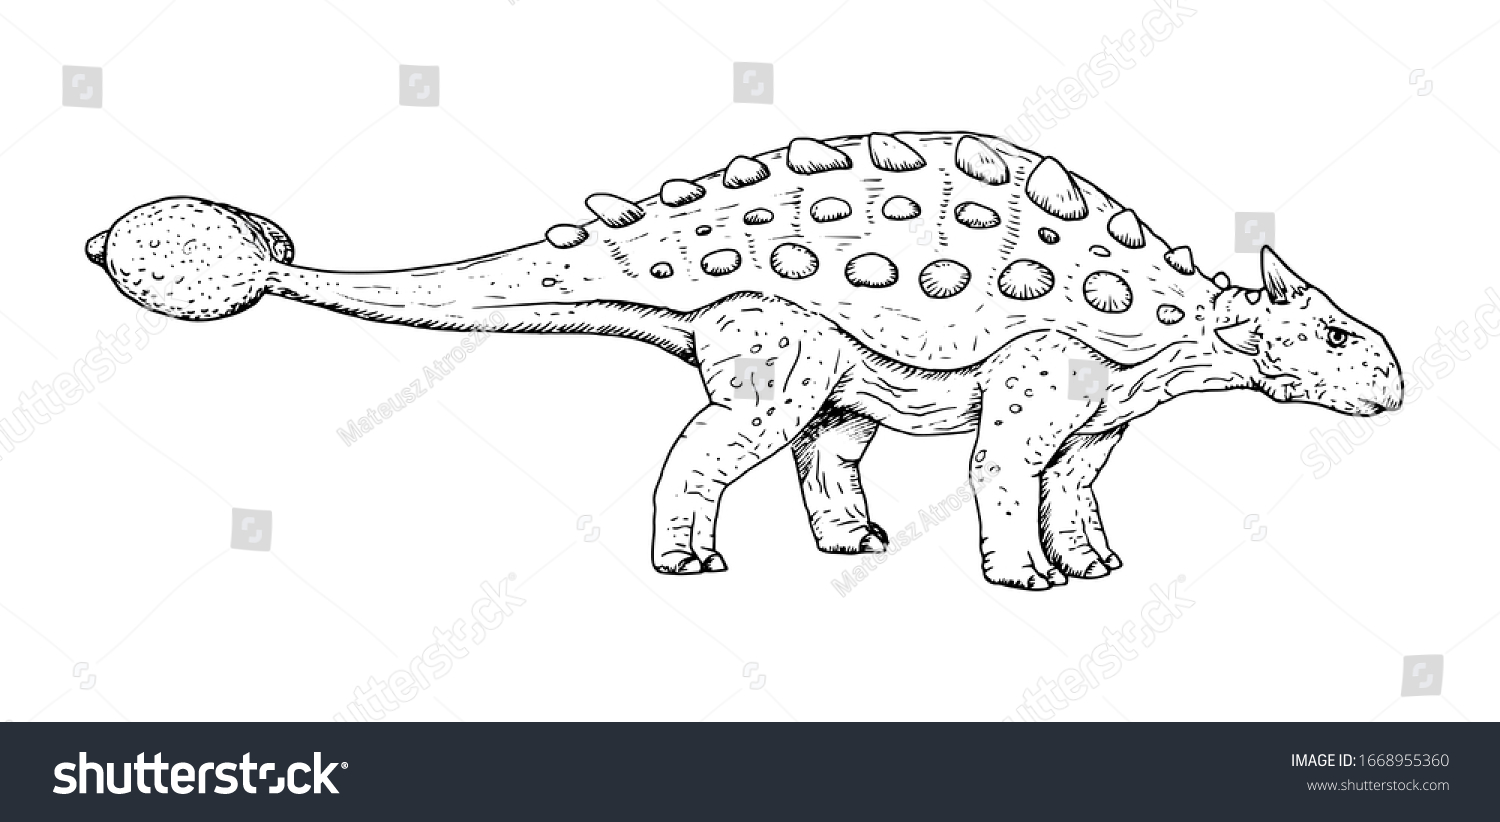 恐竜の図 アンキロサウルスの手描きのスケッチ 白黒のイラスト のベクター画像素材 ロイヤリティフリー